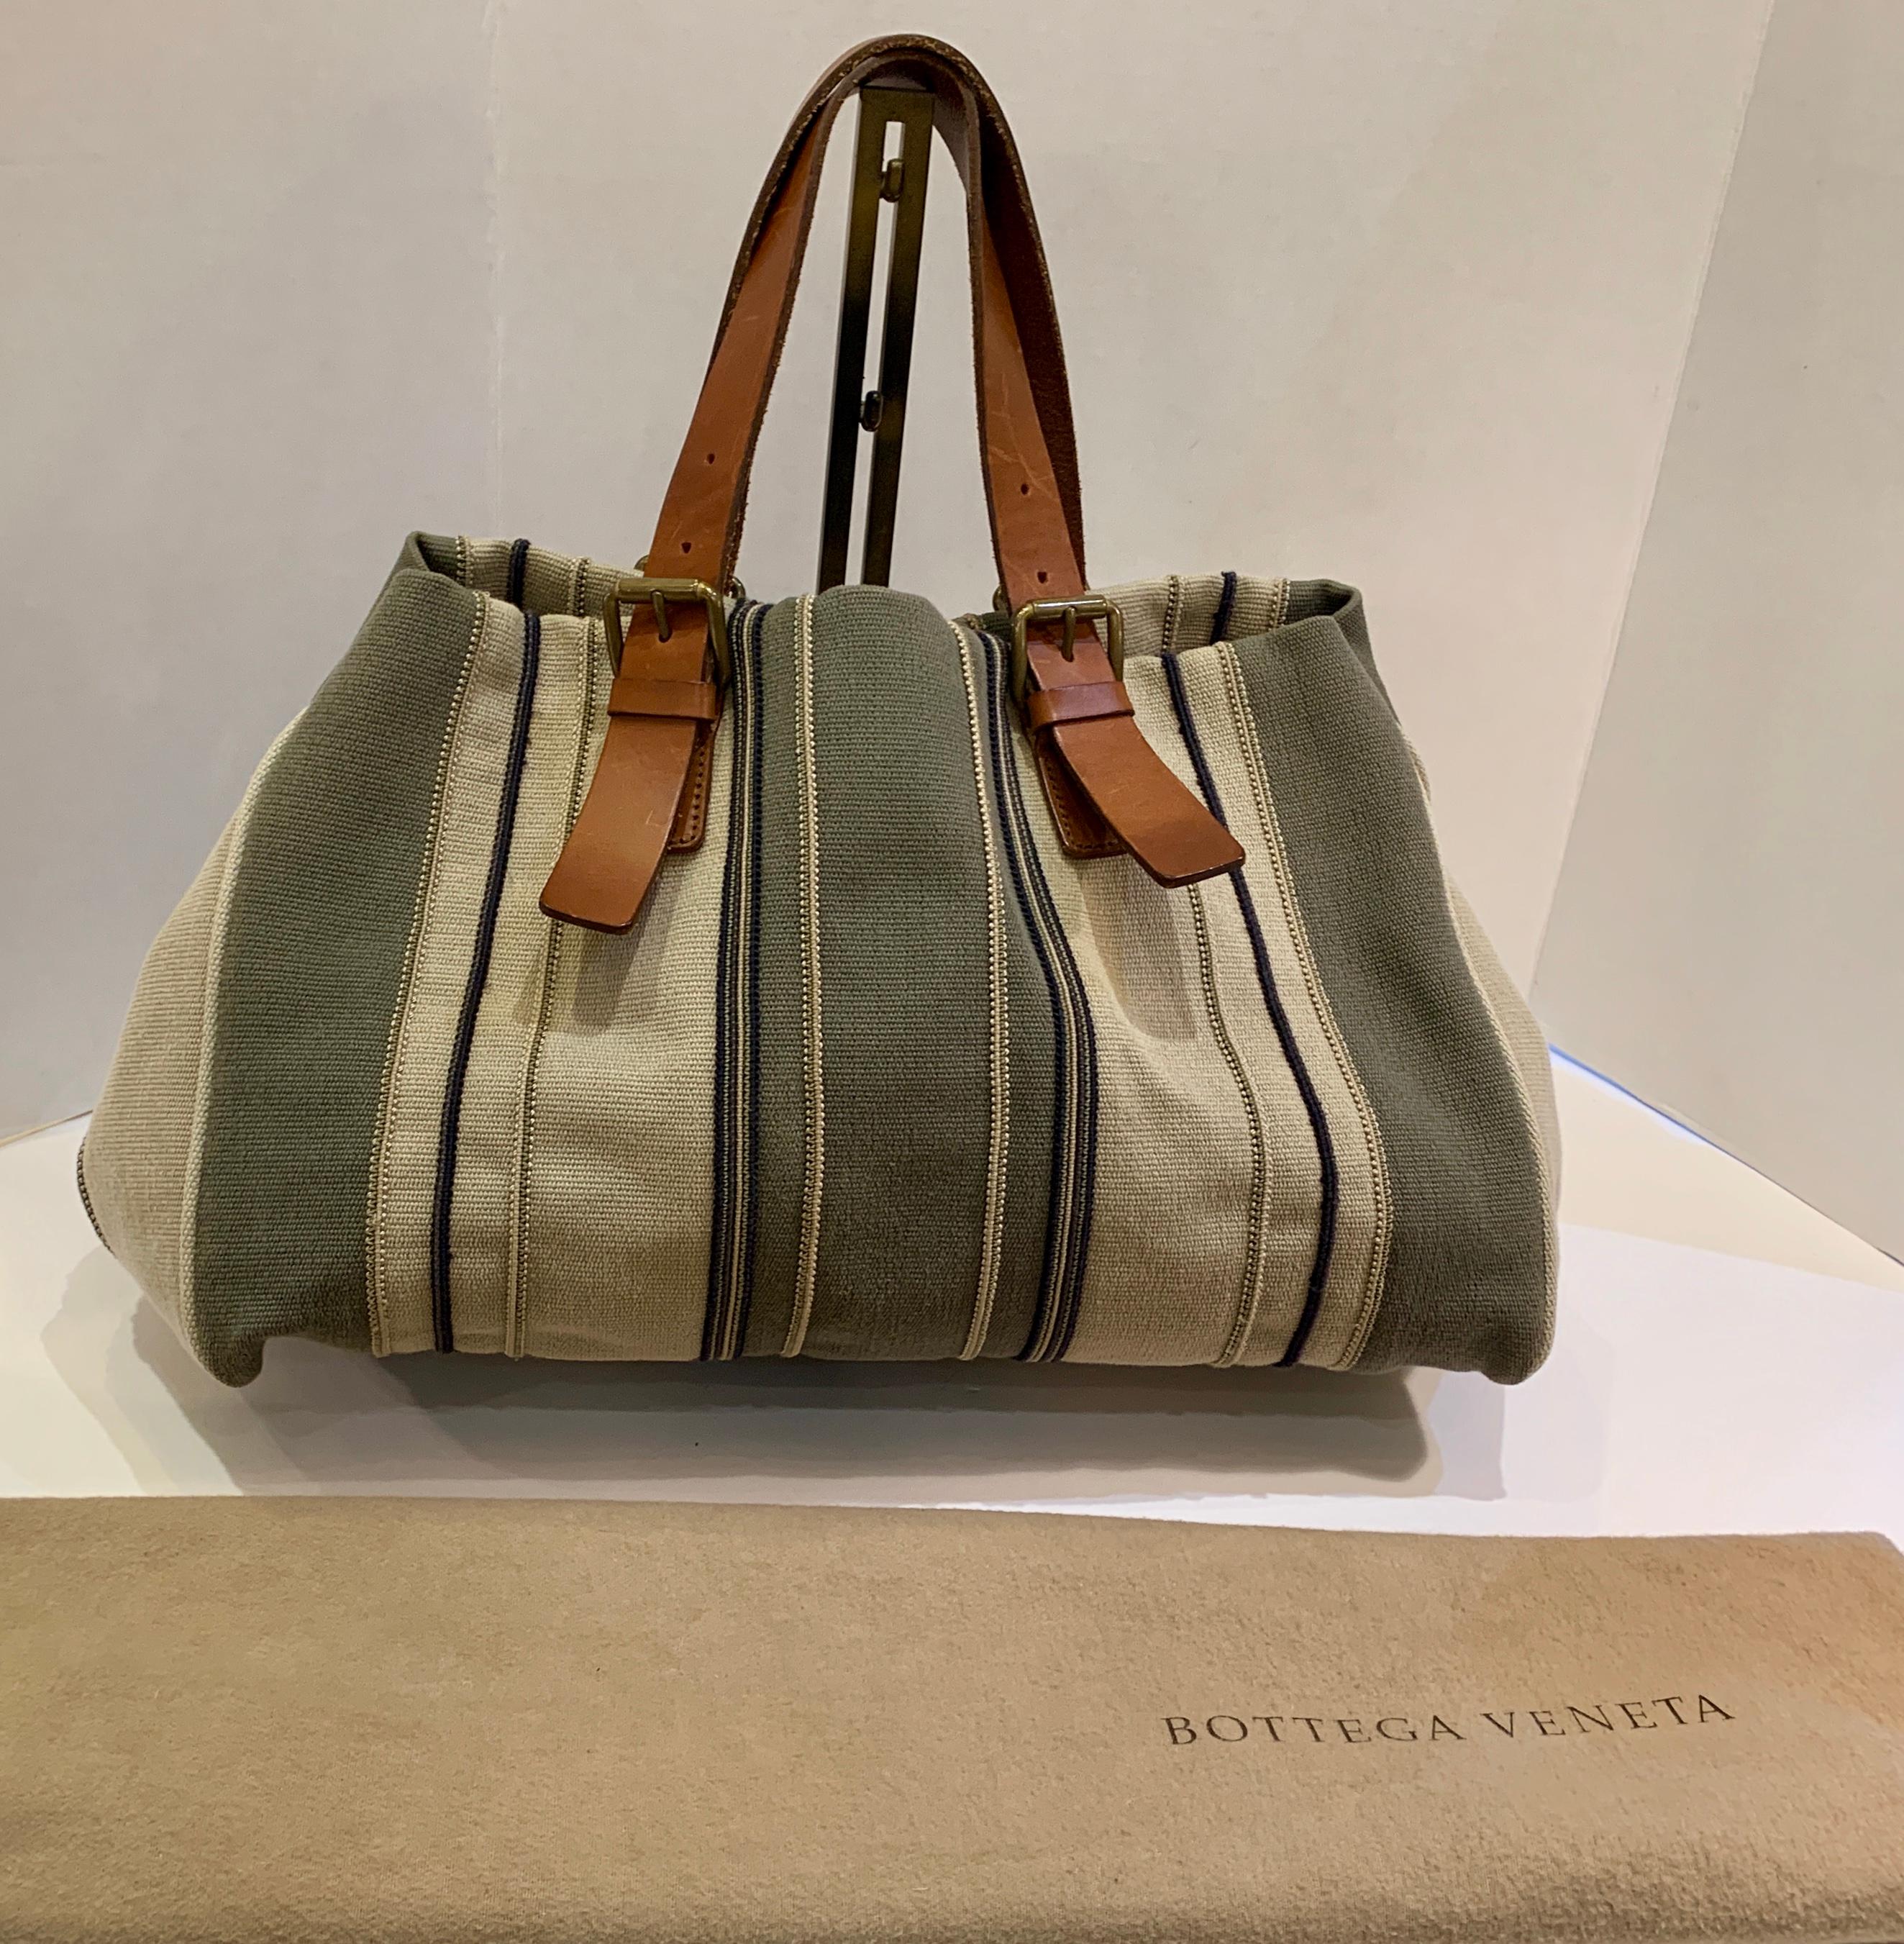 Bottega Veneta legt bei der Kreation seiner zeitlosen Handtaschen Wert auf handwerkliche Qualität:: Exklusivität und dezenten Luxus. Diese geräumige:: mehrfarbige:: erdfarbene:: gestreifte Canvas-Handtasche oder -Tasche verfügt über verstellbare::